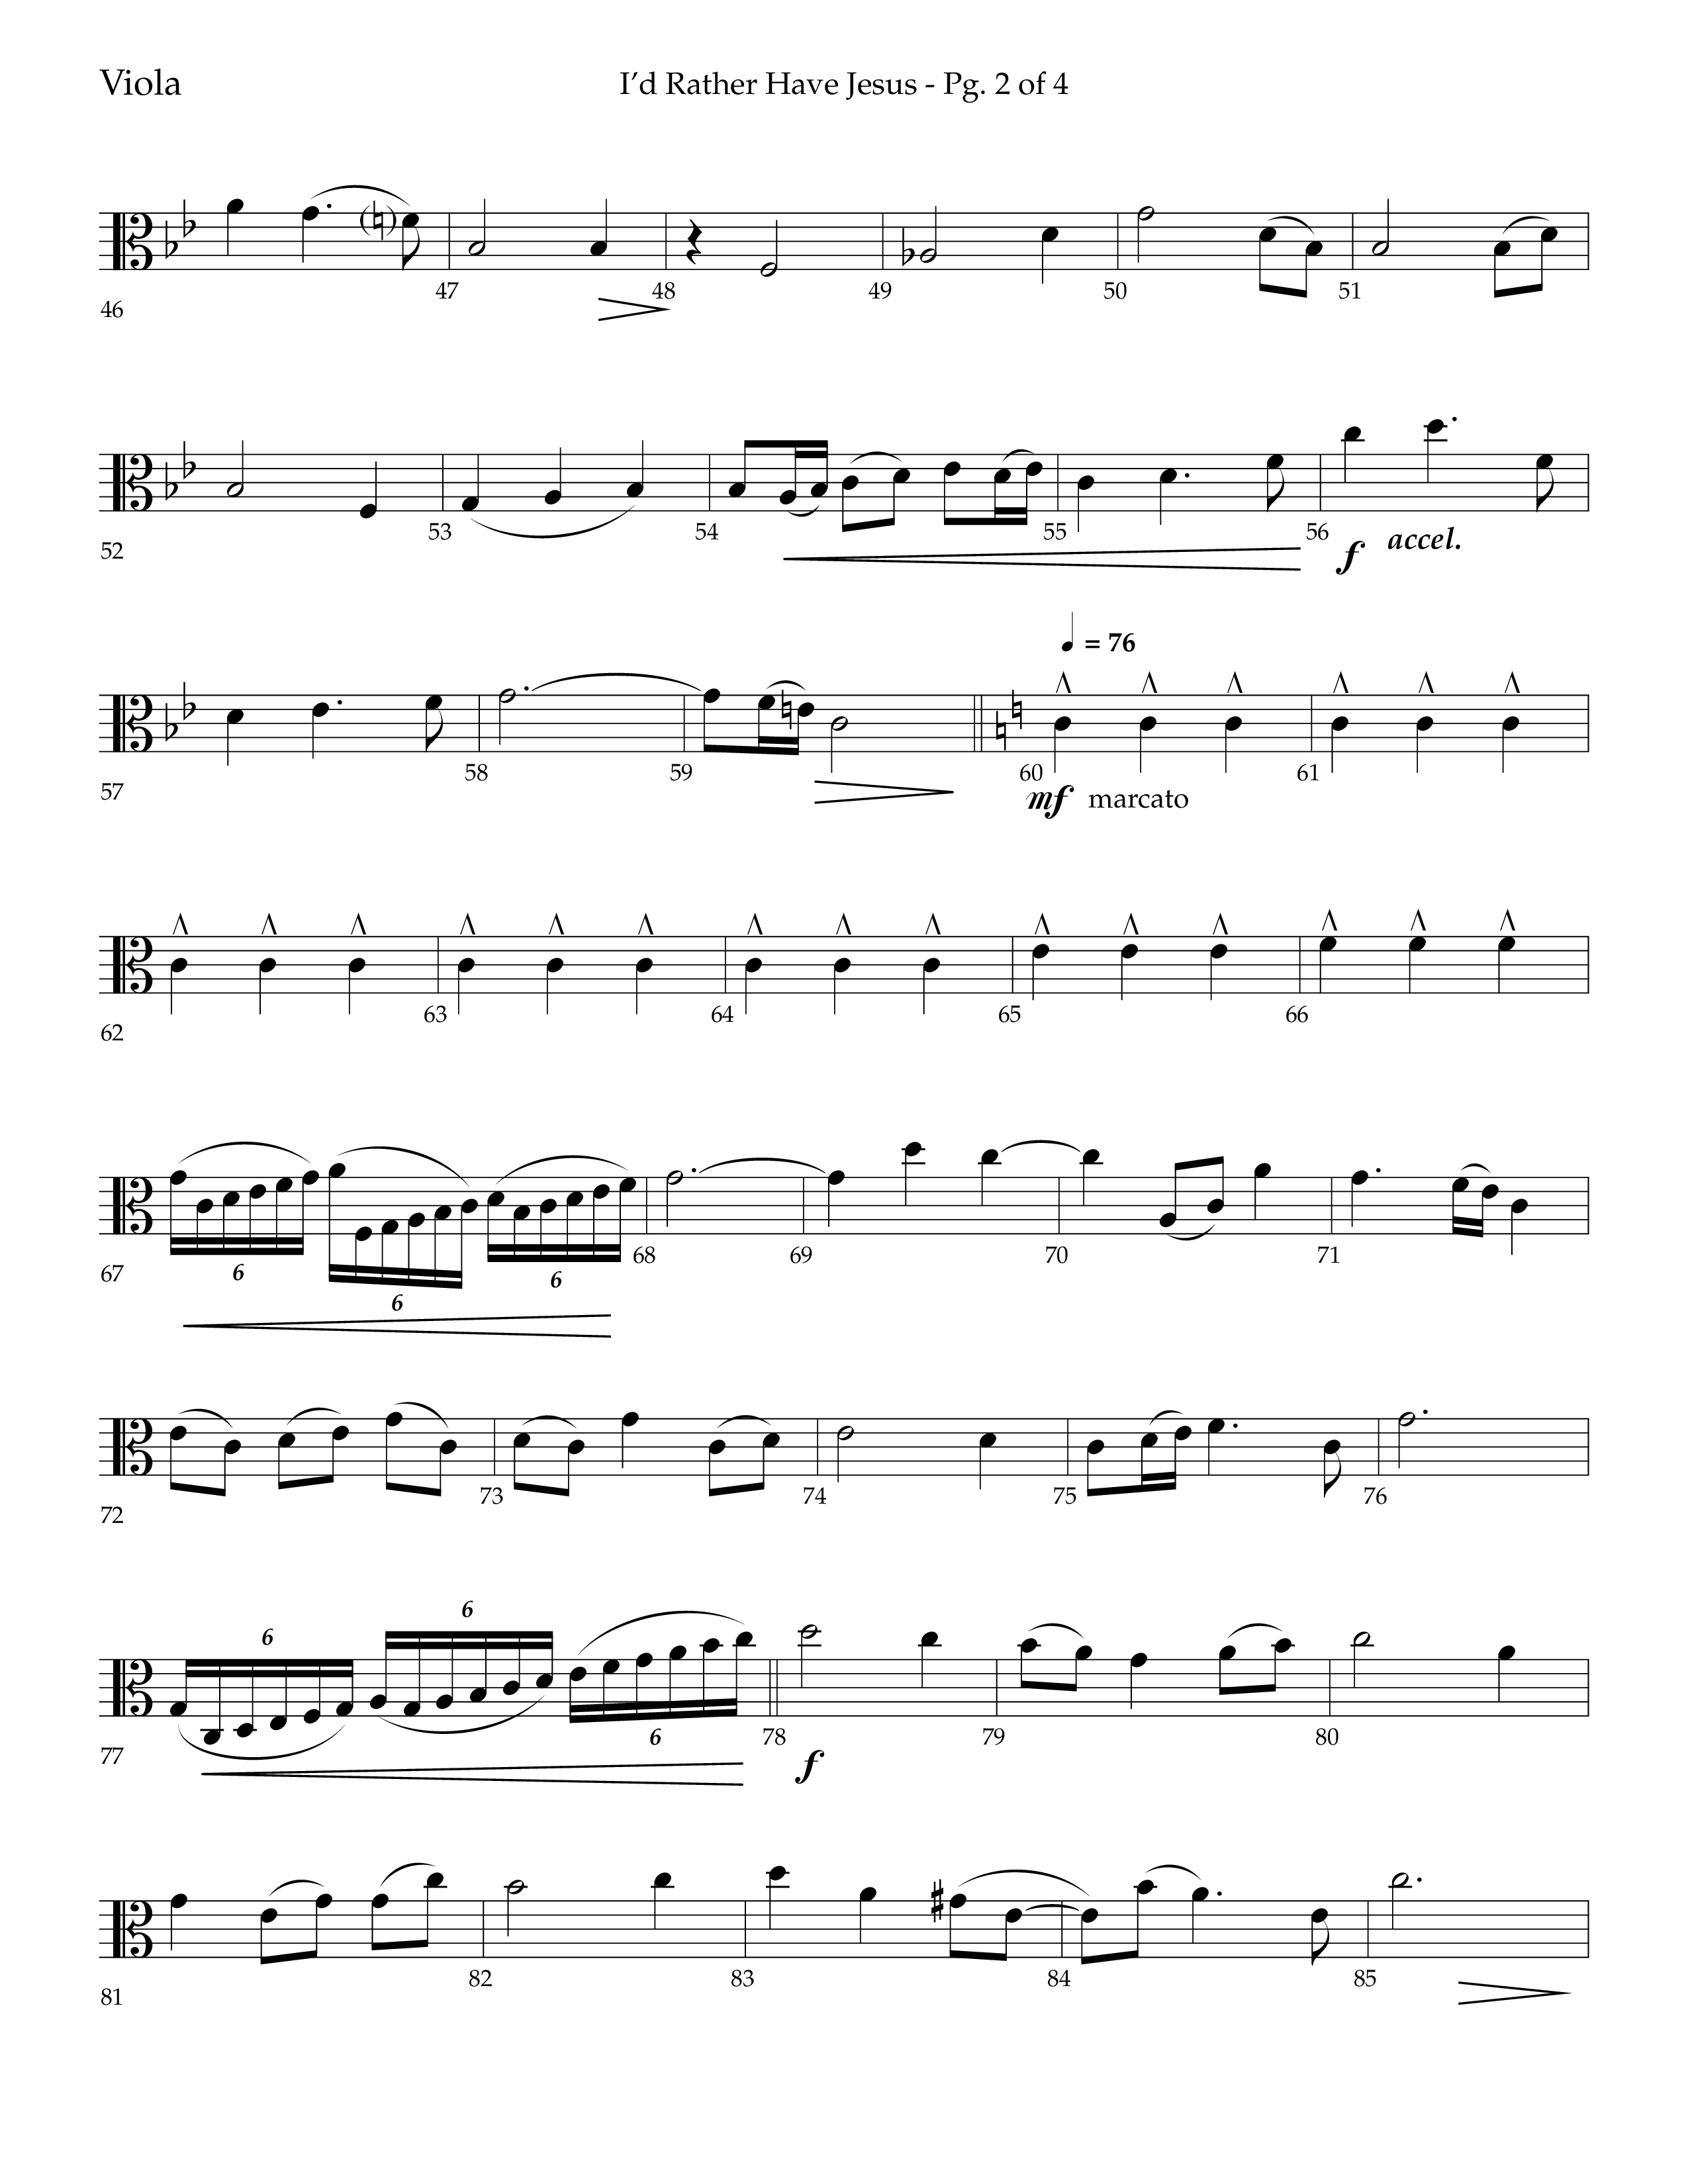 I'd Rather Have Jesus (Choral Anthem SATB) Viola (Lifeway Choral / Arr. Richard Kingsmore)